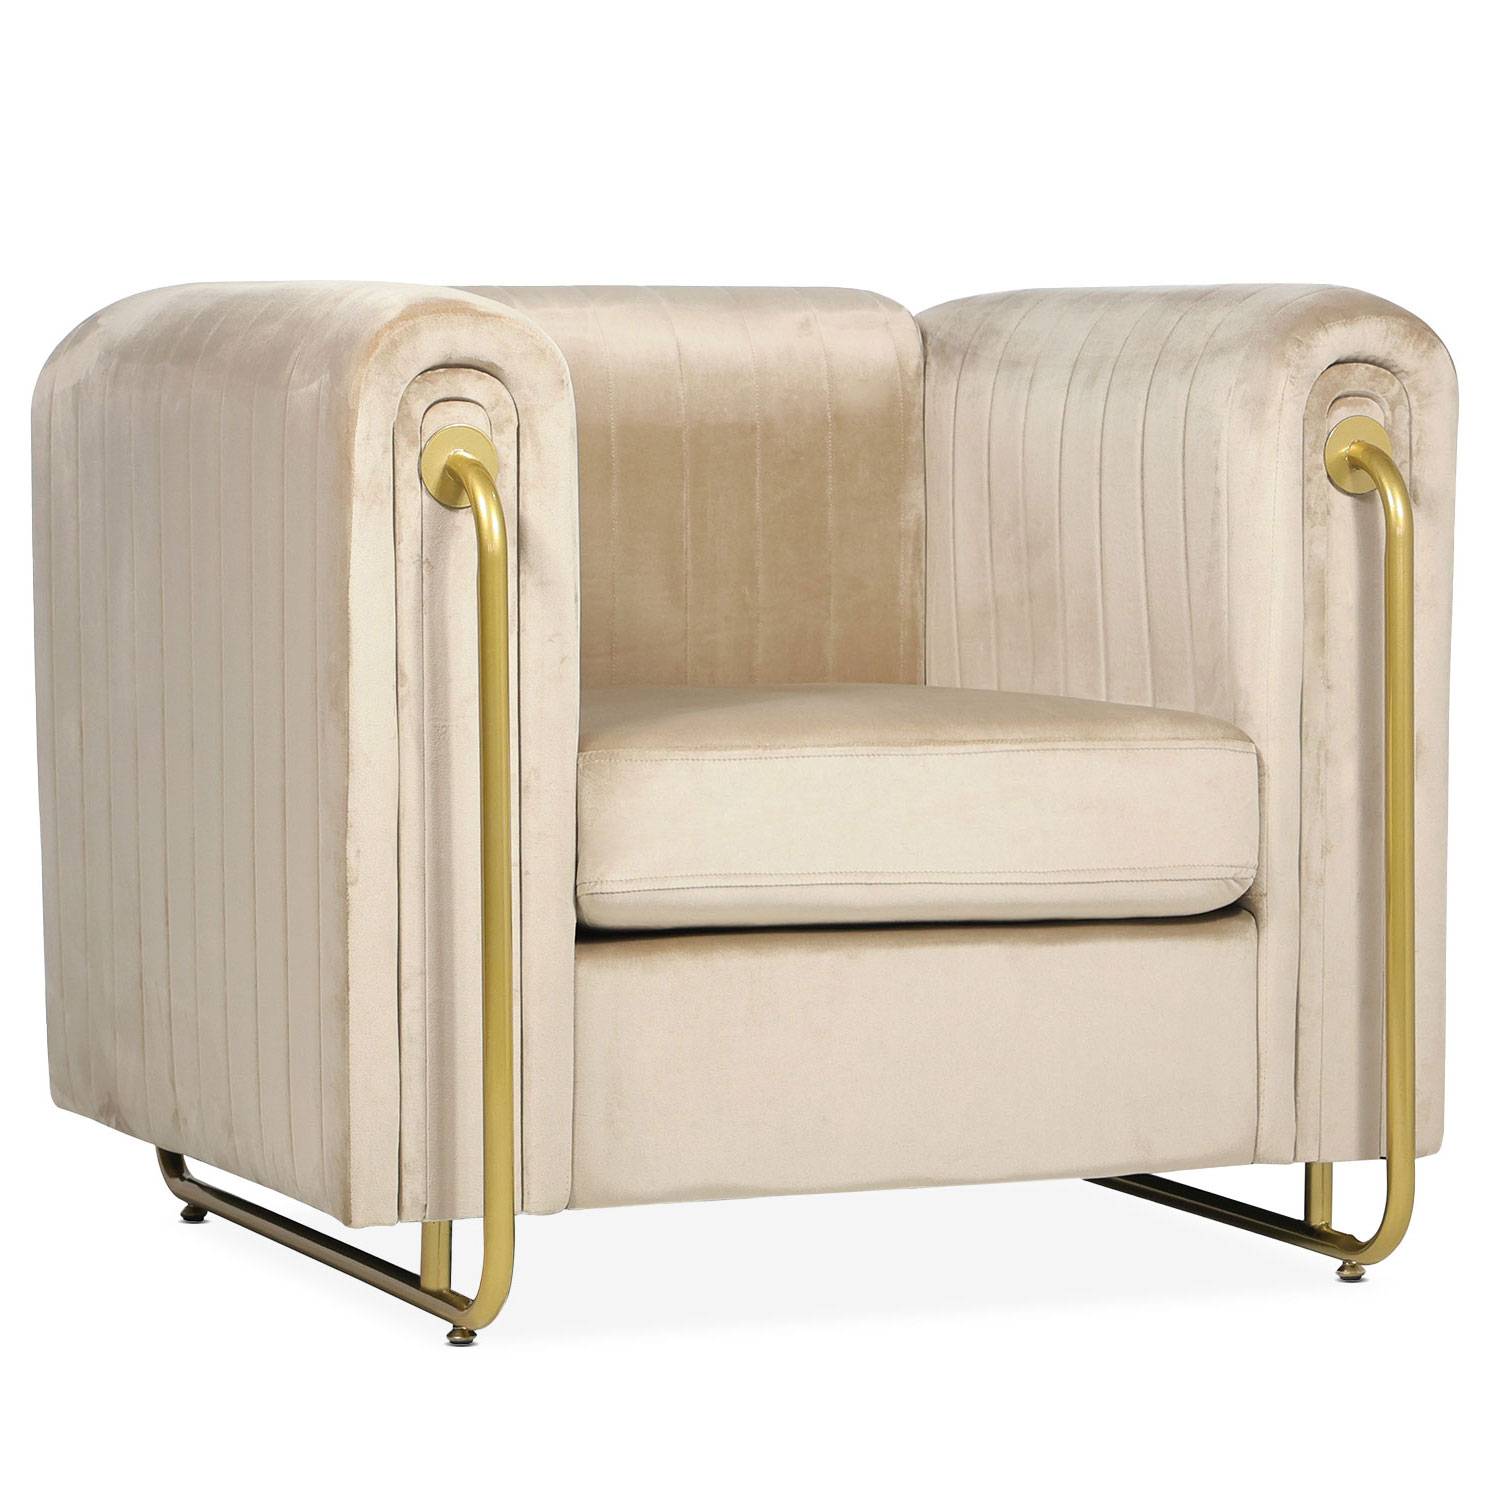 Edward sillón art deco con estructura de metal dorado y terciopelo de color topo claro